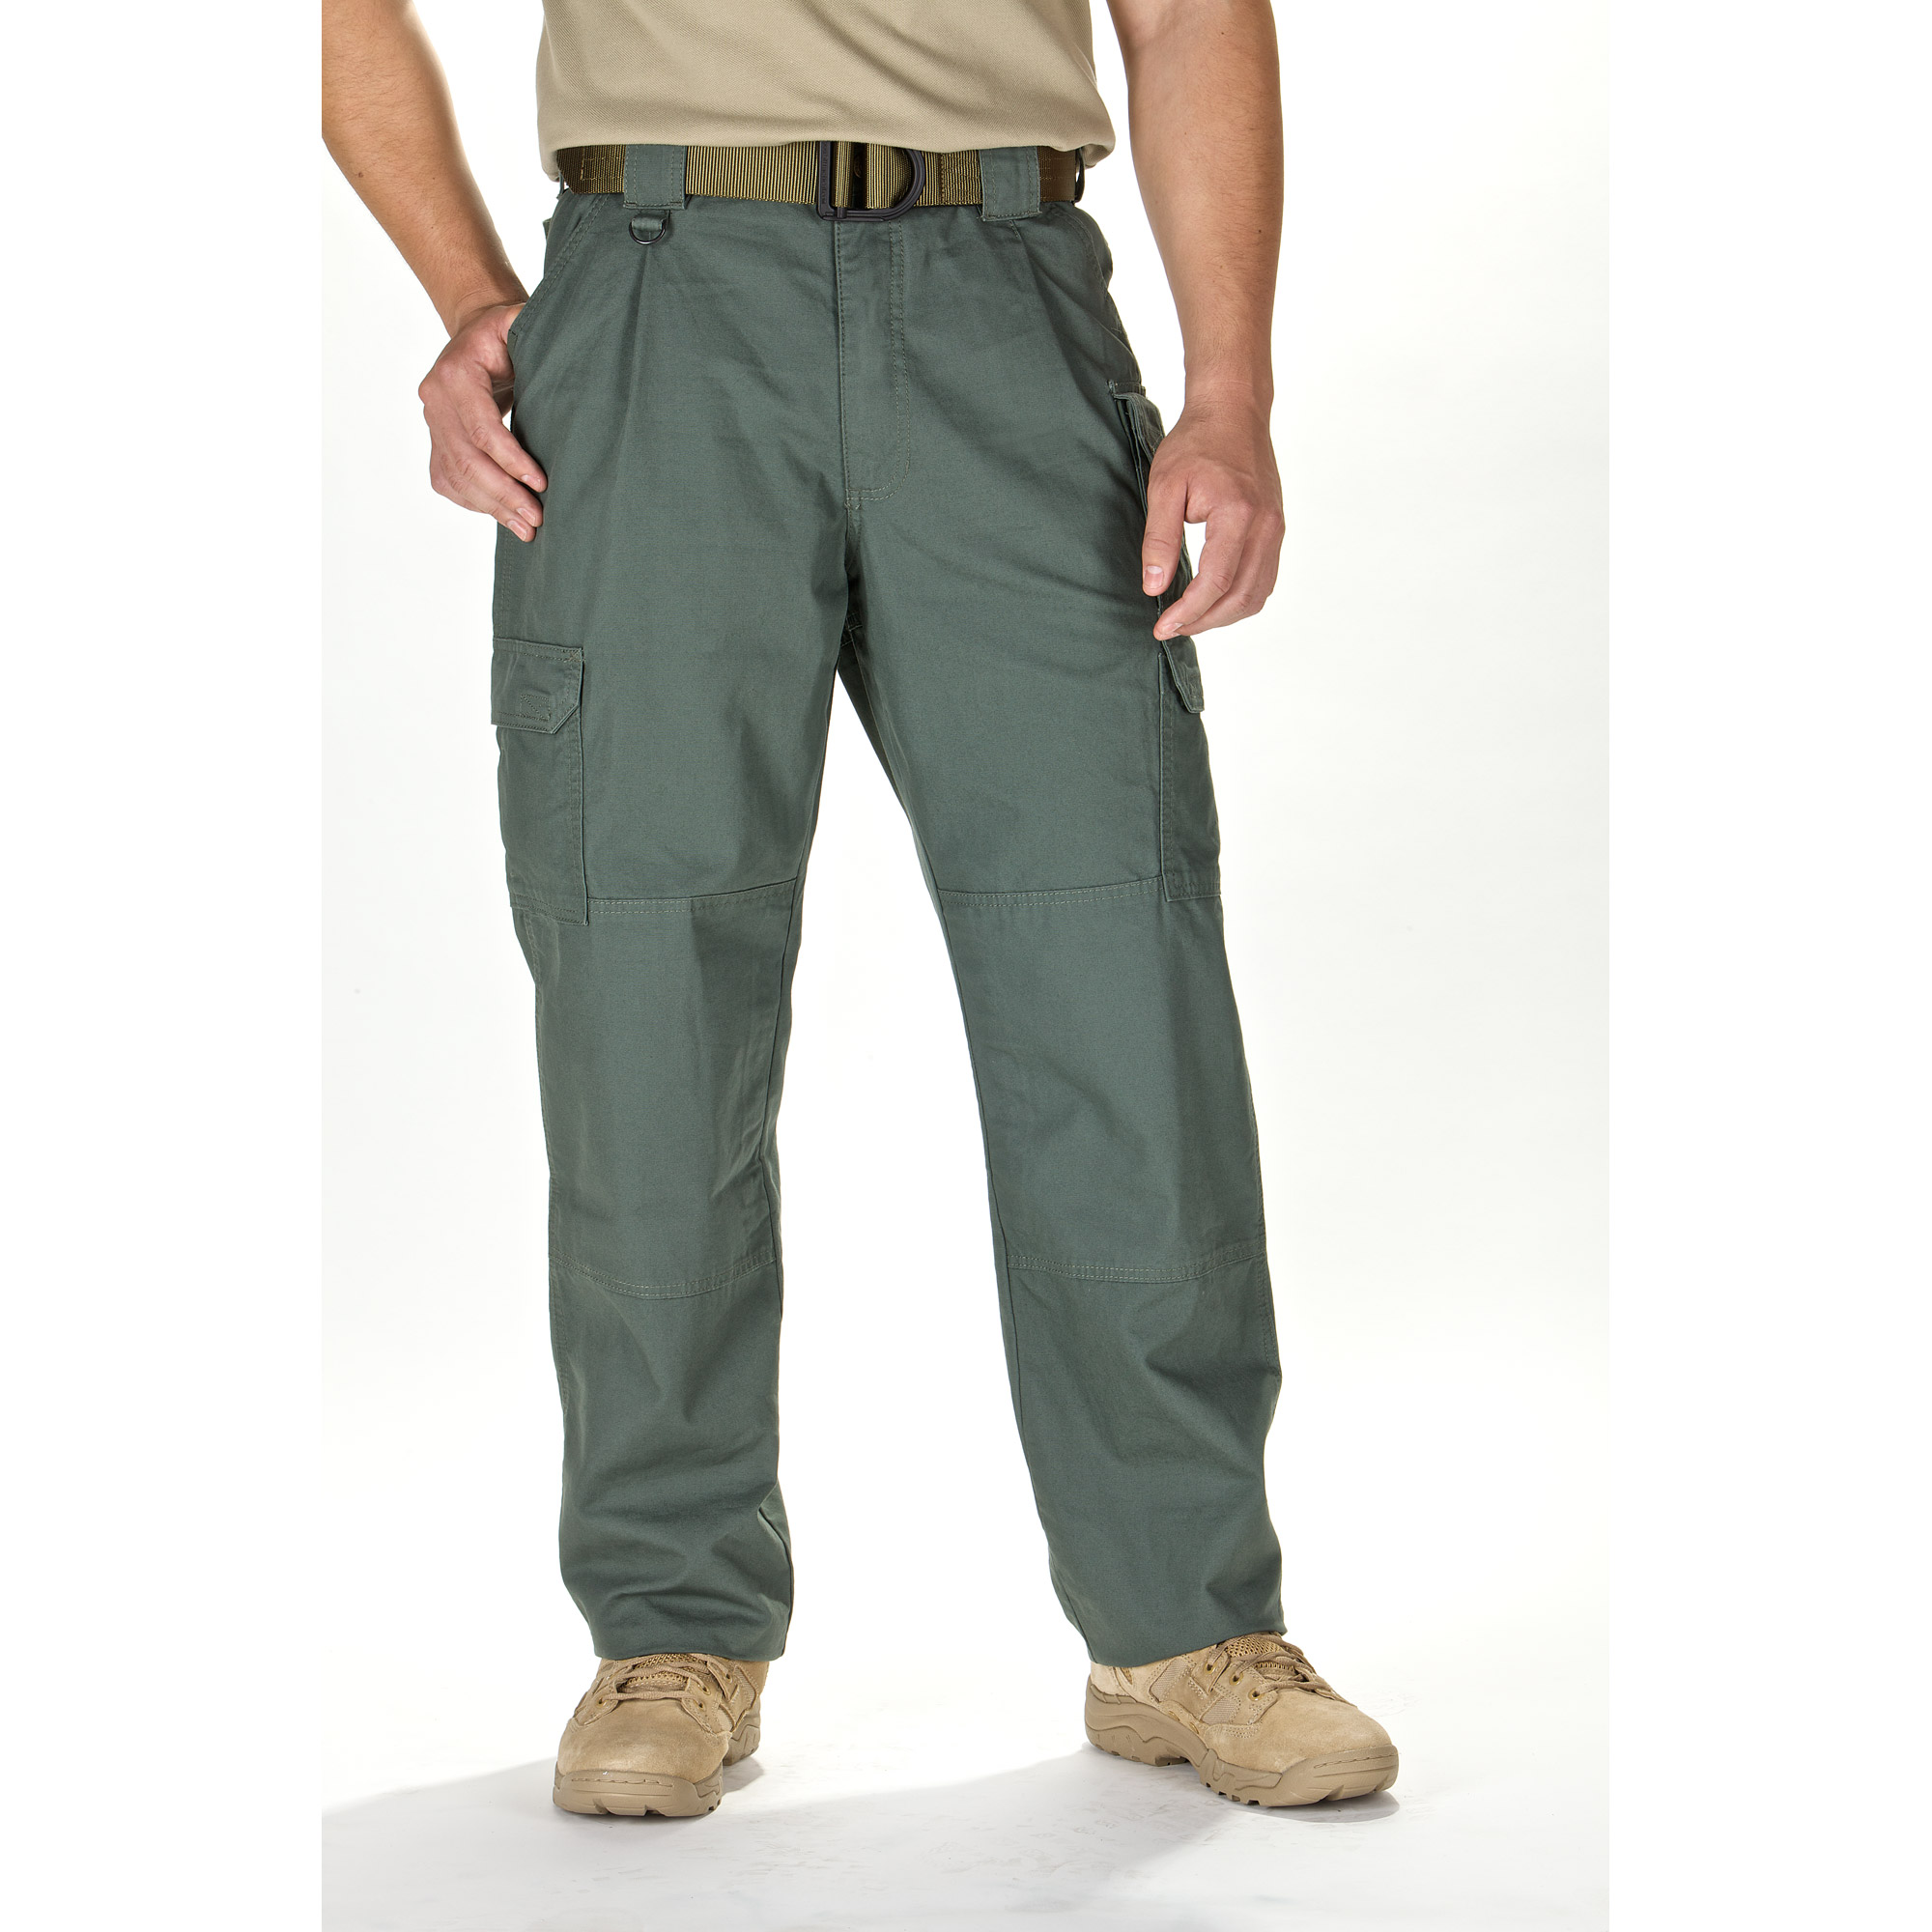 5.11 Cotton Tactical Pants